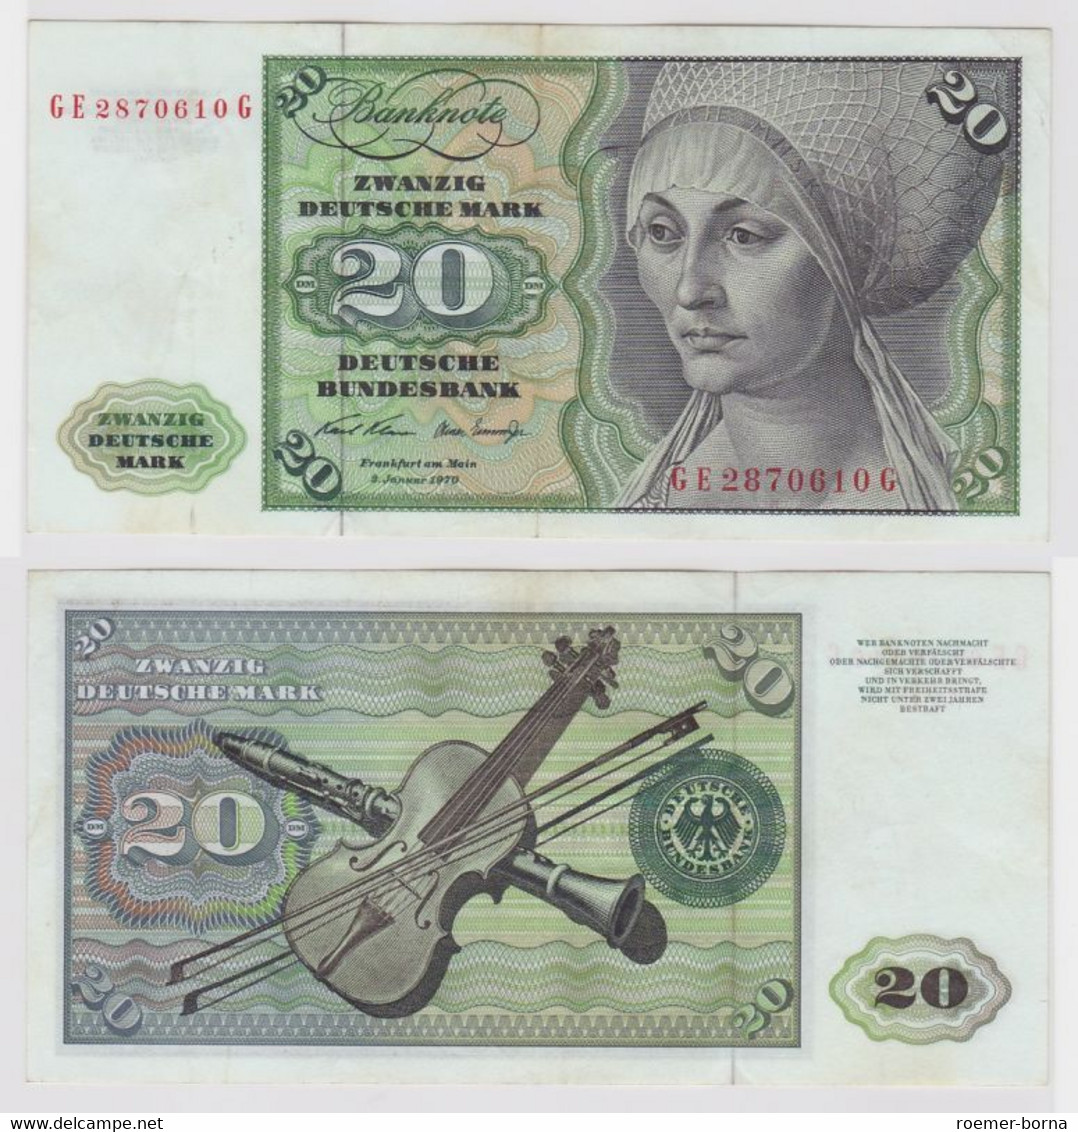 T148197 Banknote 20 DM Deutsche Mark Ro. 271b Schein 2.Jan. 1970 KN GE 2870610 G - 20 DM